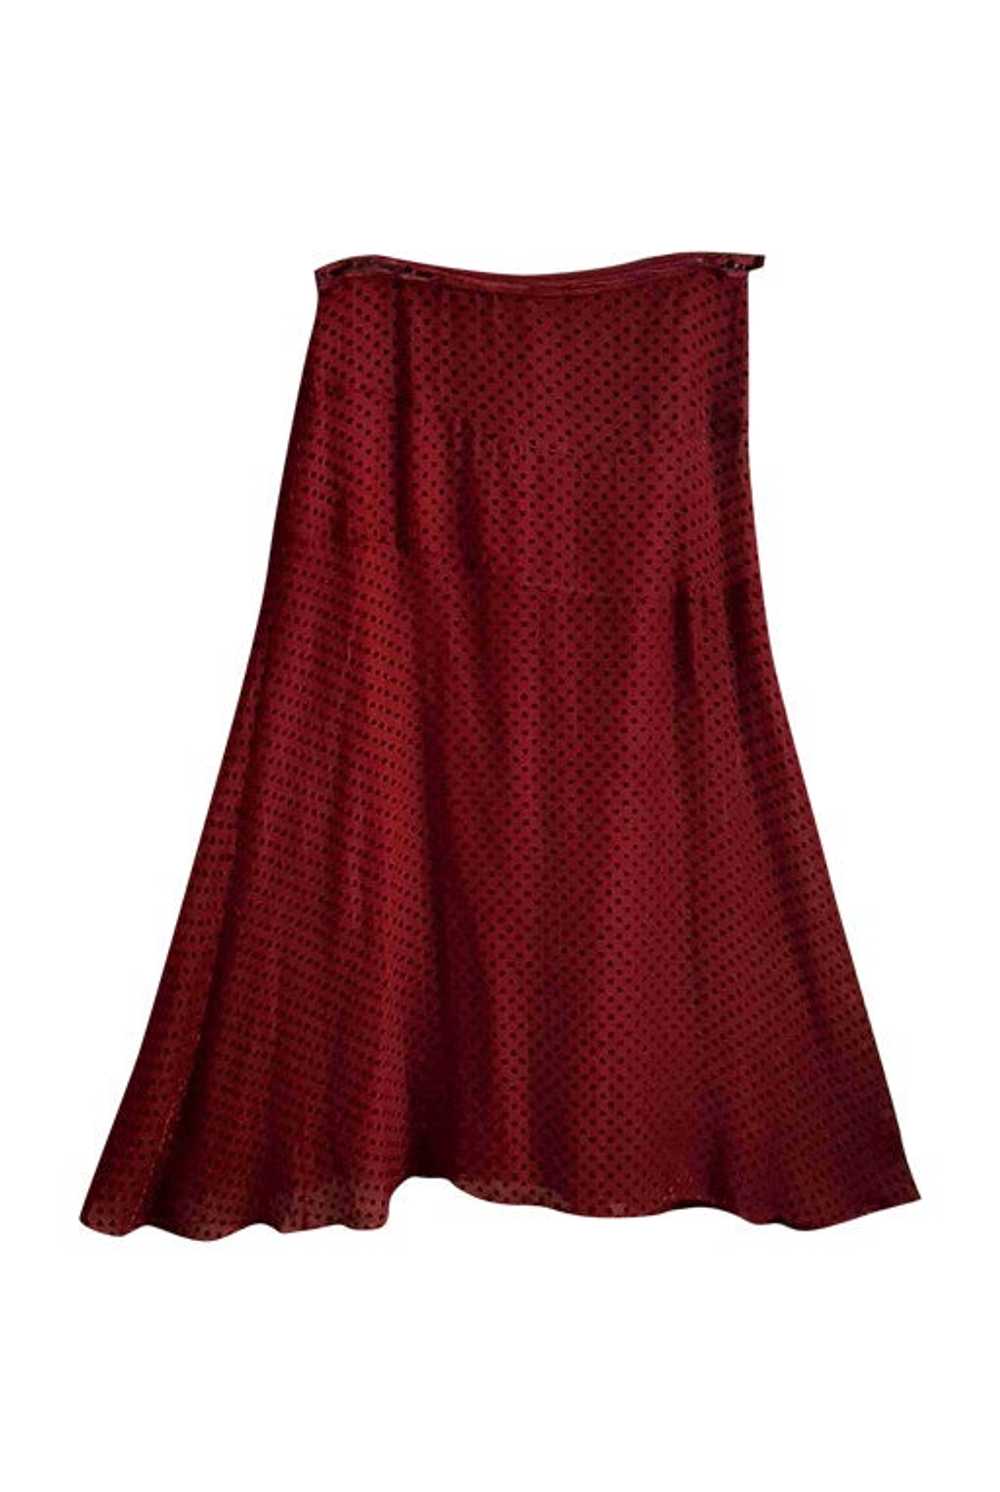 Polka dot skirt - Long silk skirt Fully lined, Bo… - image 1